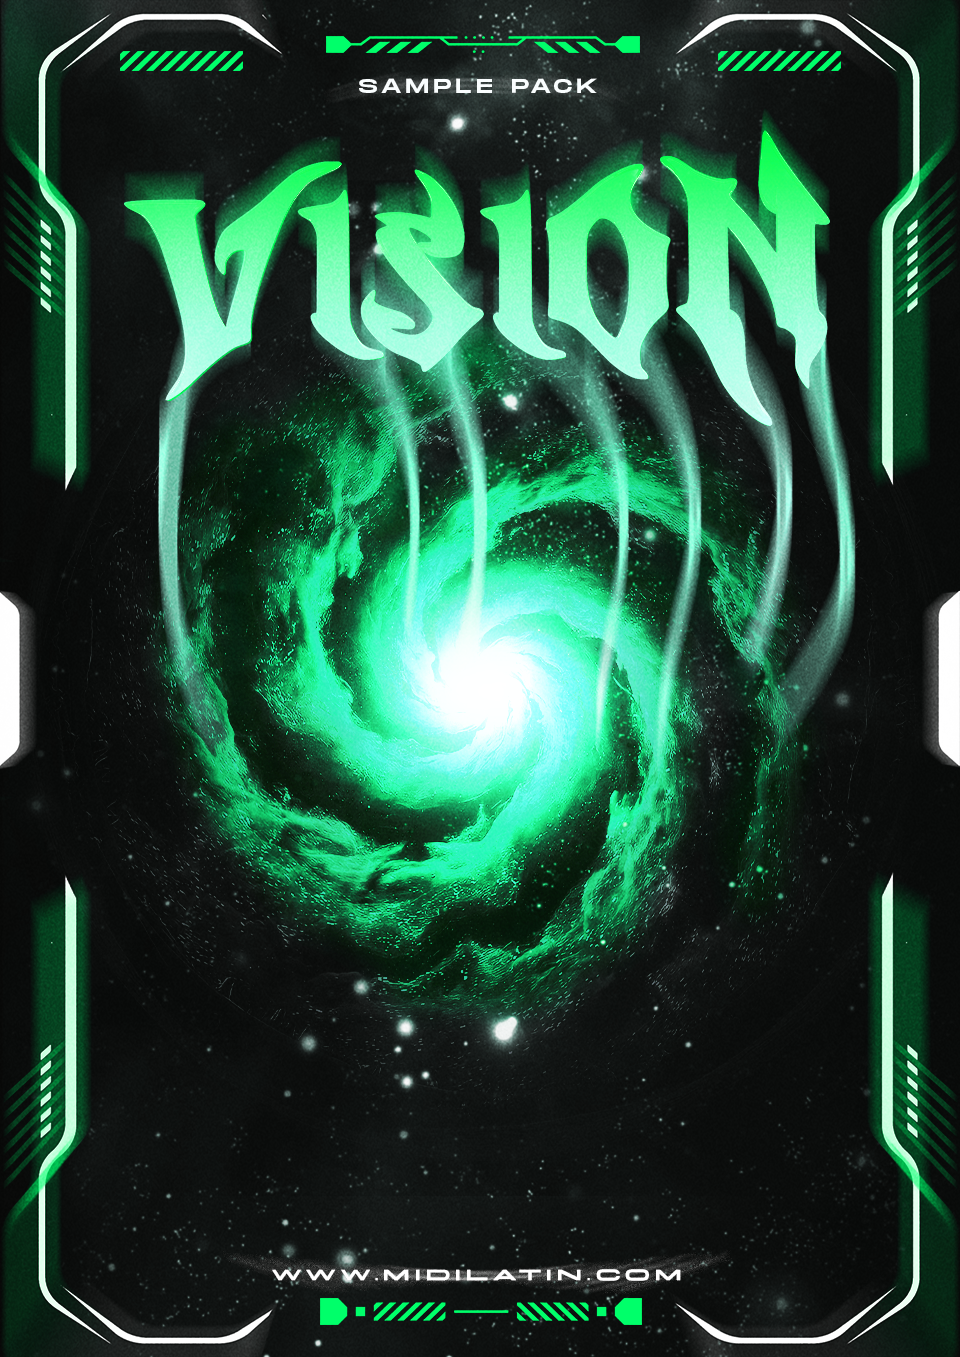 VISION REGGAETON SAMPLE PACK VOL. 1